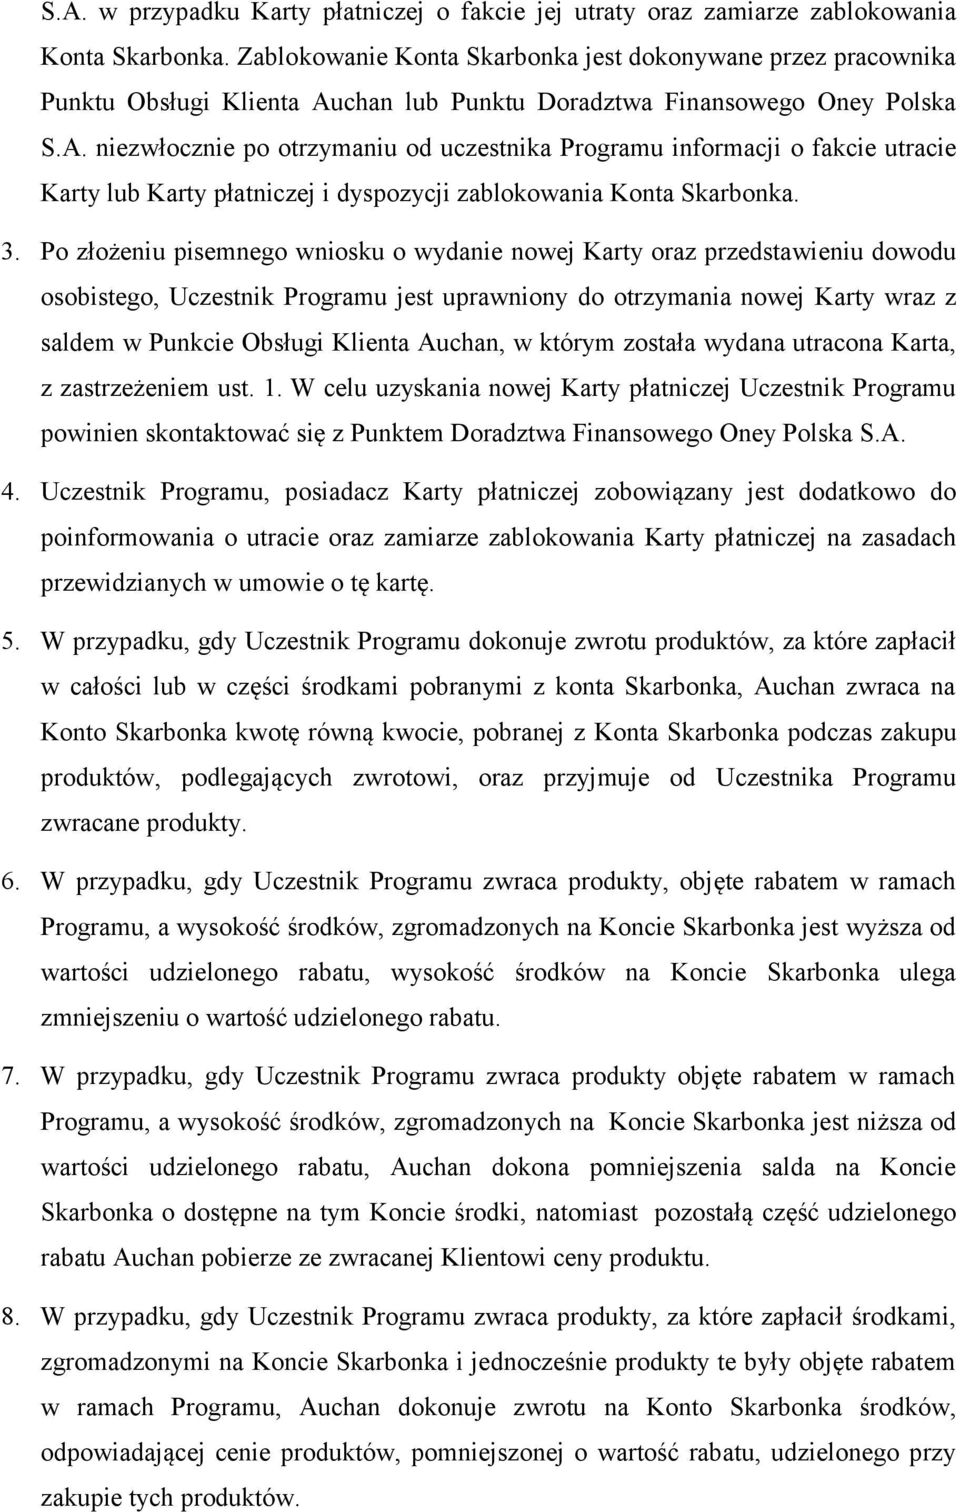 Regulamin programu oszczędnościowego Skarbonka, realizowanego przez Auchan  Polska Sp. z o.o. - PDF Darmowe pobieranie